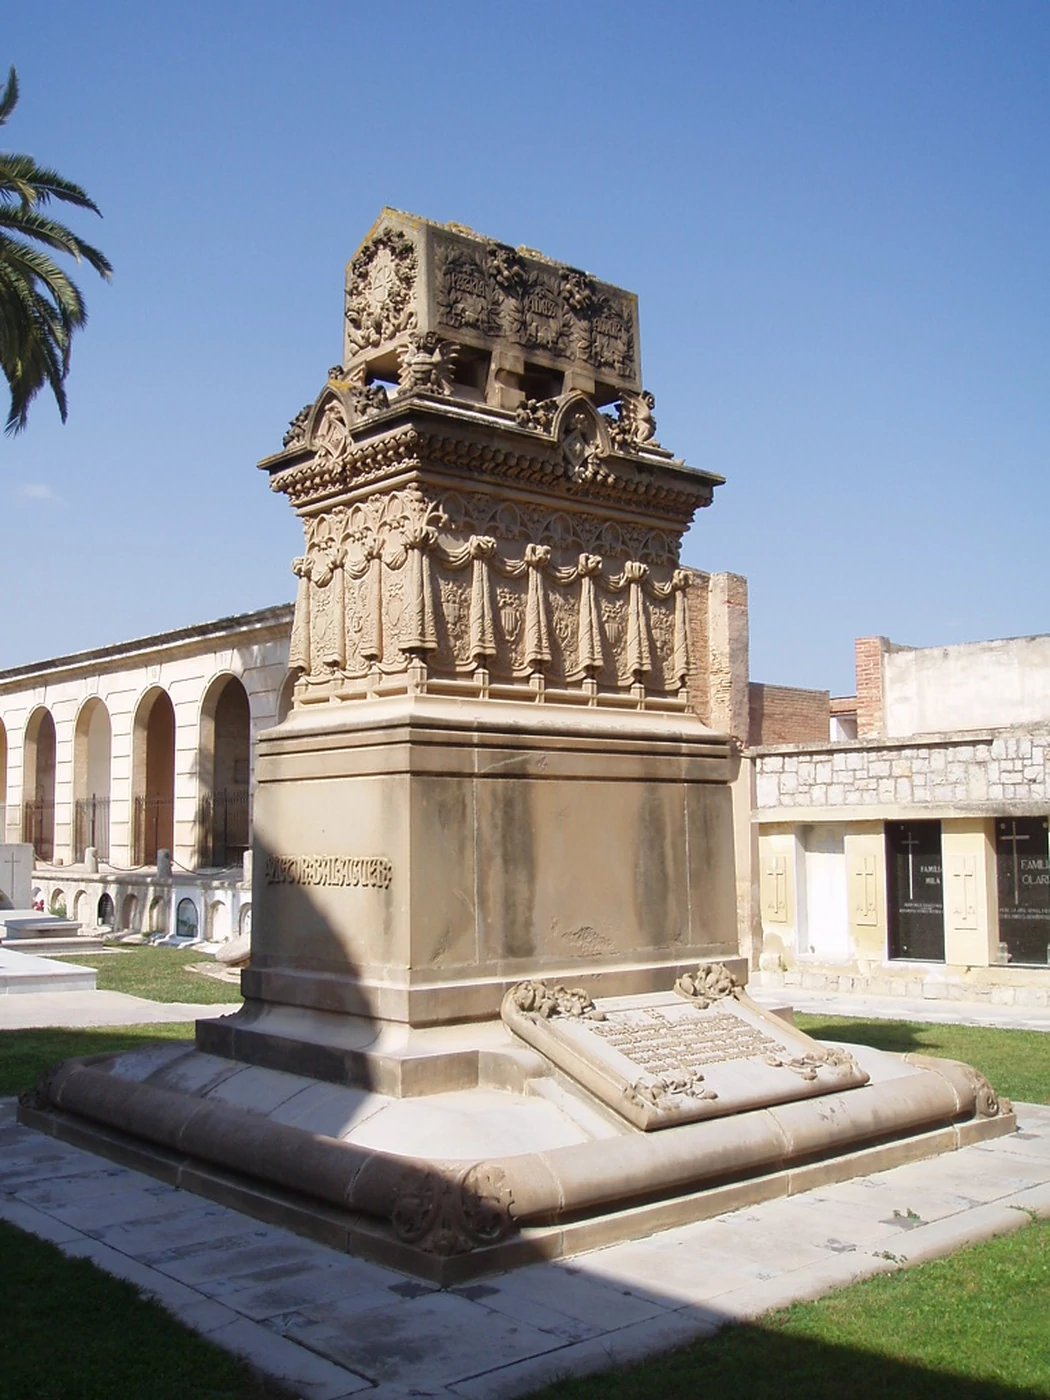   Los 20 cementerios más bonitos de España  Vilanova.jpg